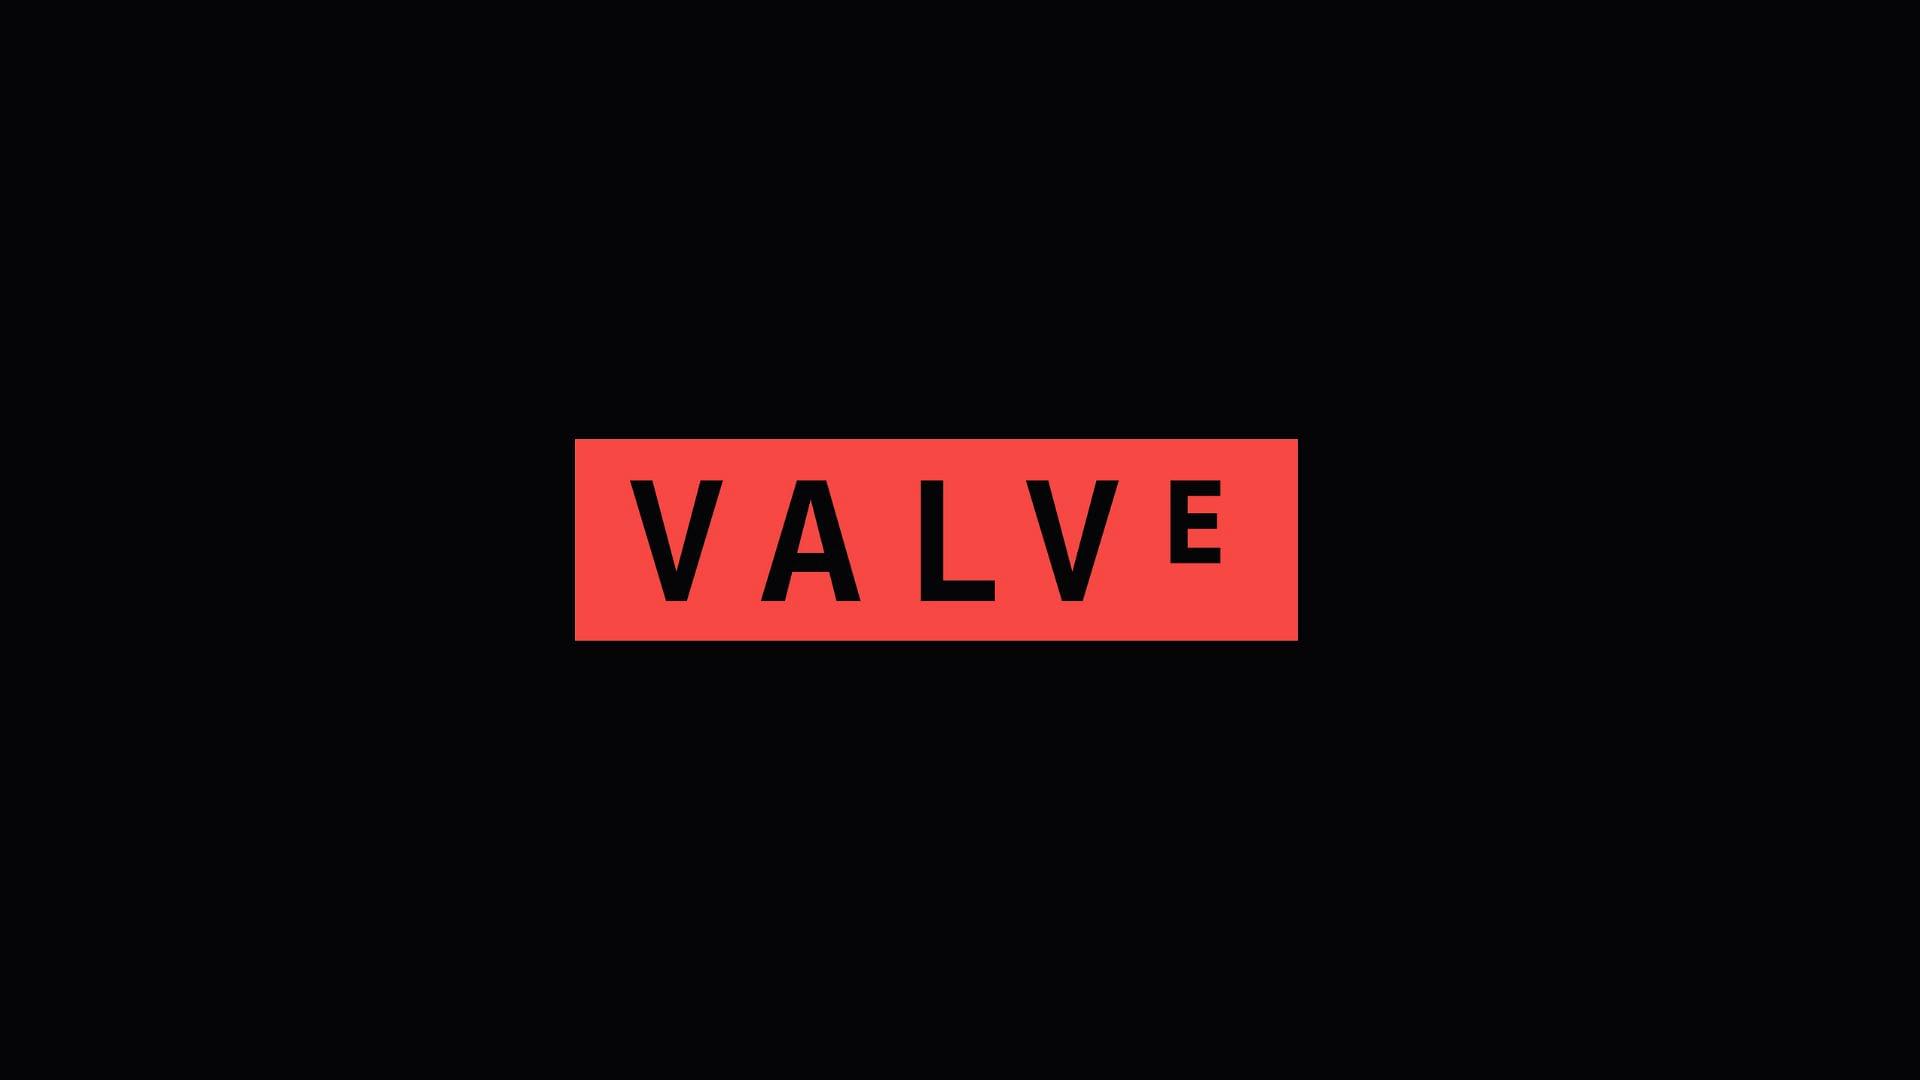 Valve logo on a dark background